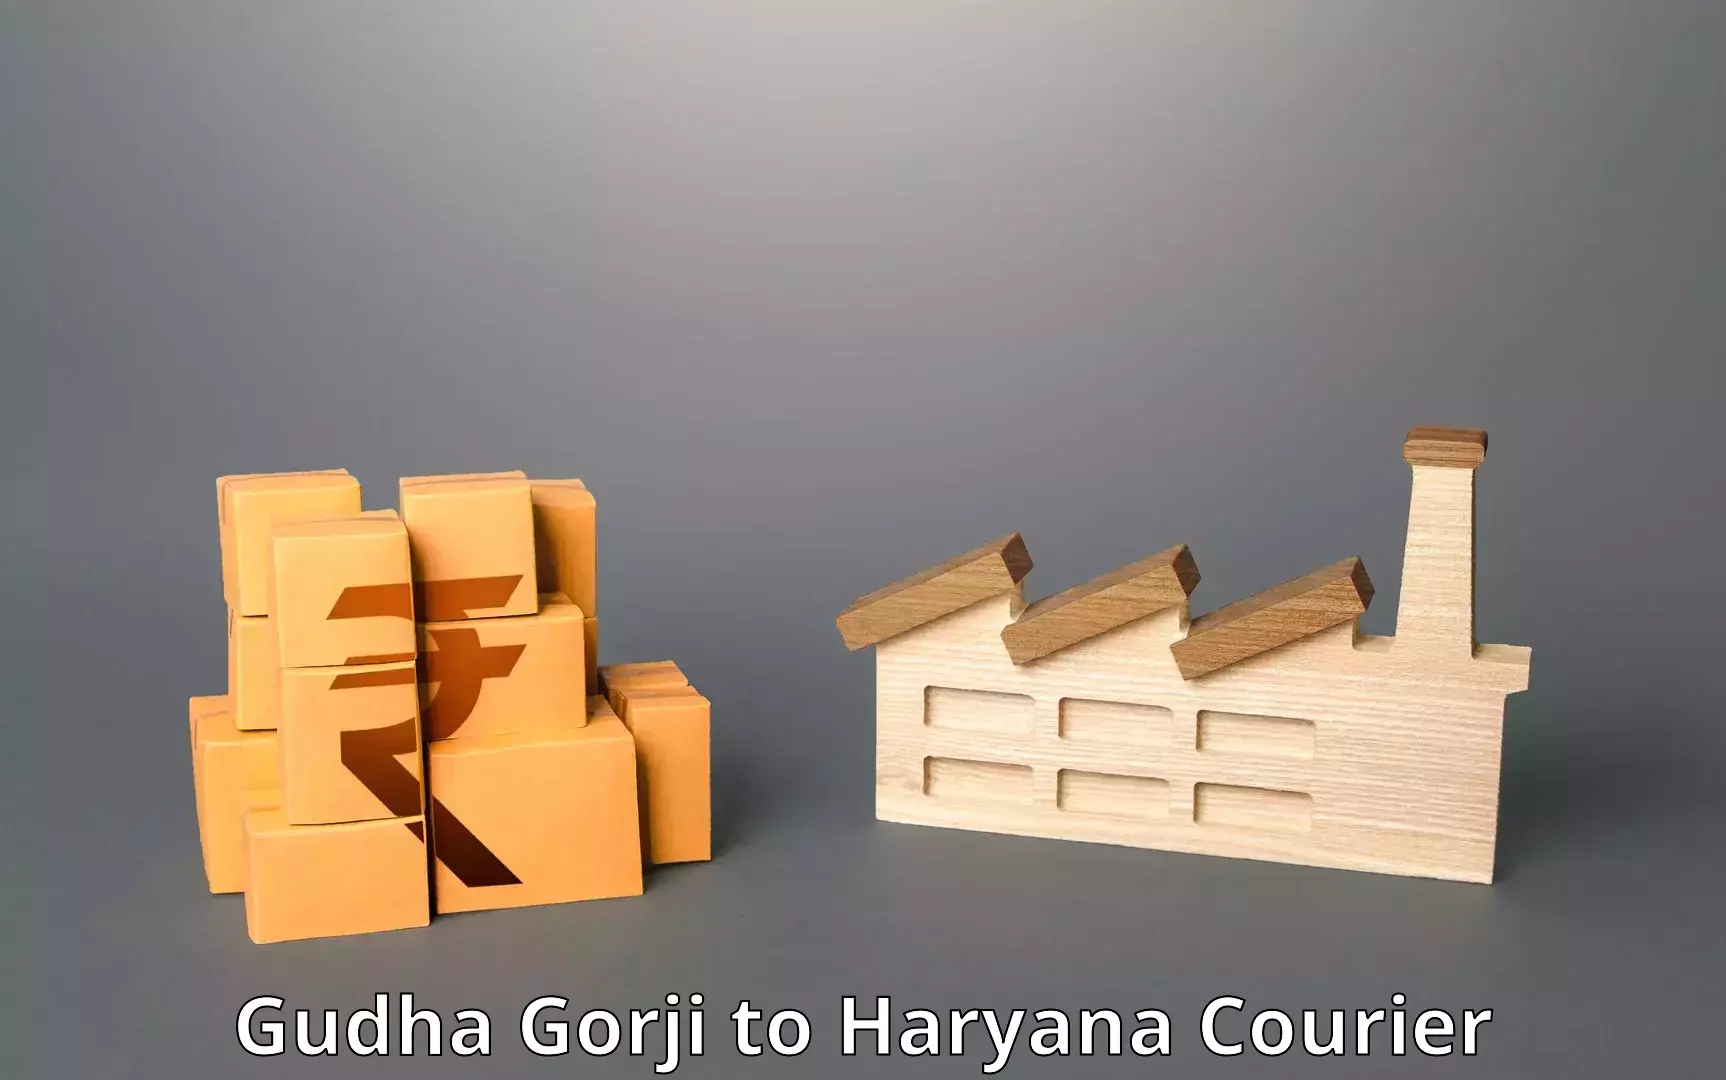 International shipping Gudha Gorji to NCR Haryana